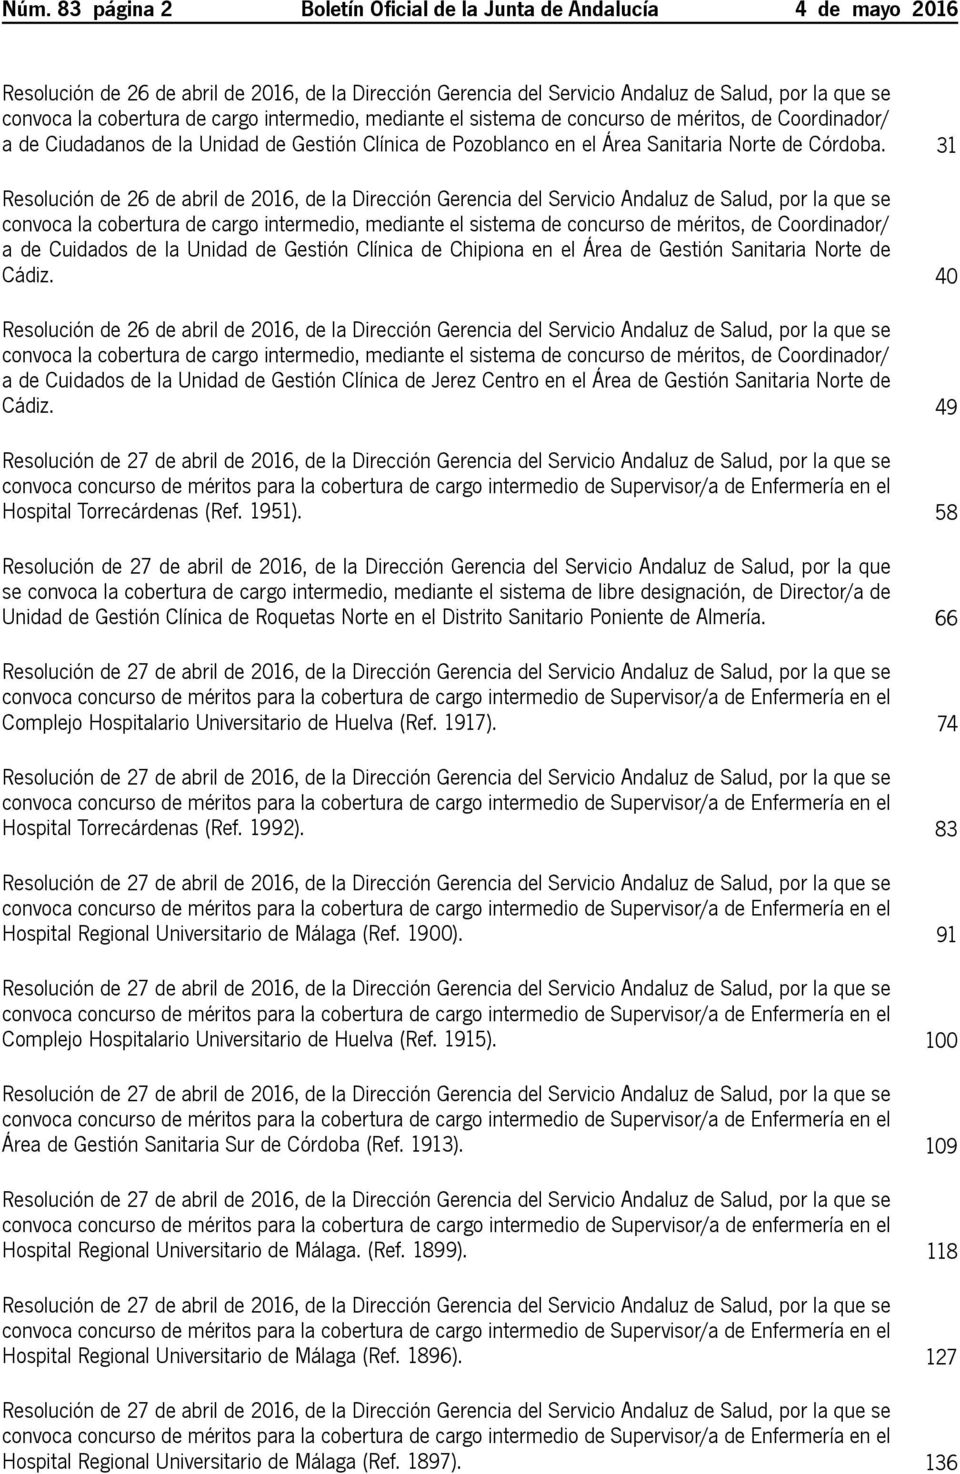 31 Resolución de 26 de abril de 2016, de la Dirección Gerencia del Servicio Andaluz de Salud, por la que se convoca la cobertura de cargo intermedio, mediante el sistema de concurso de méritos, de